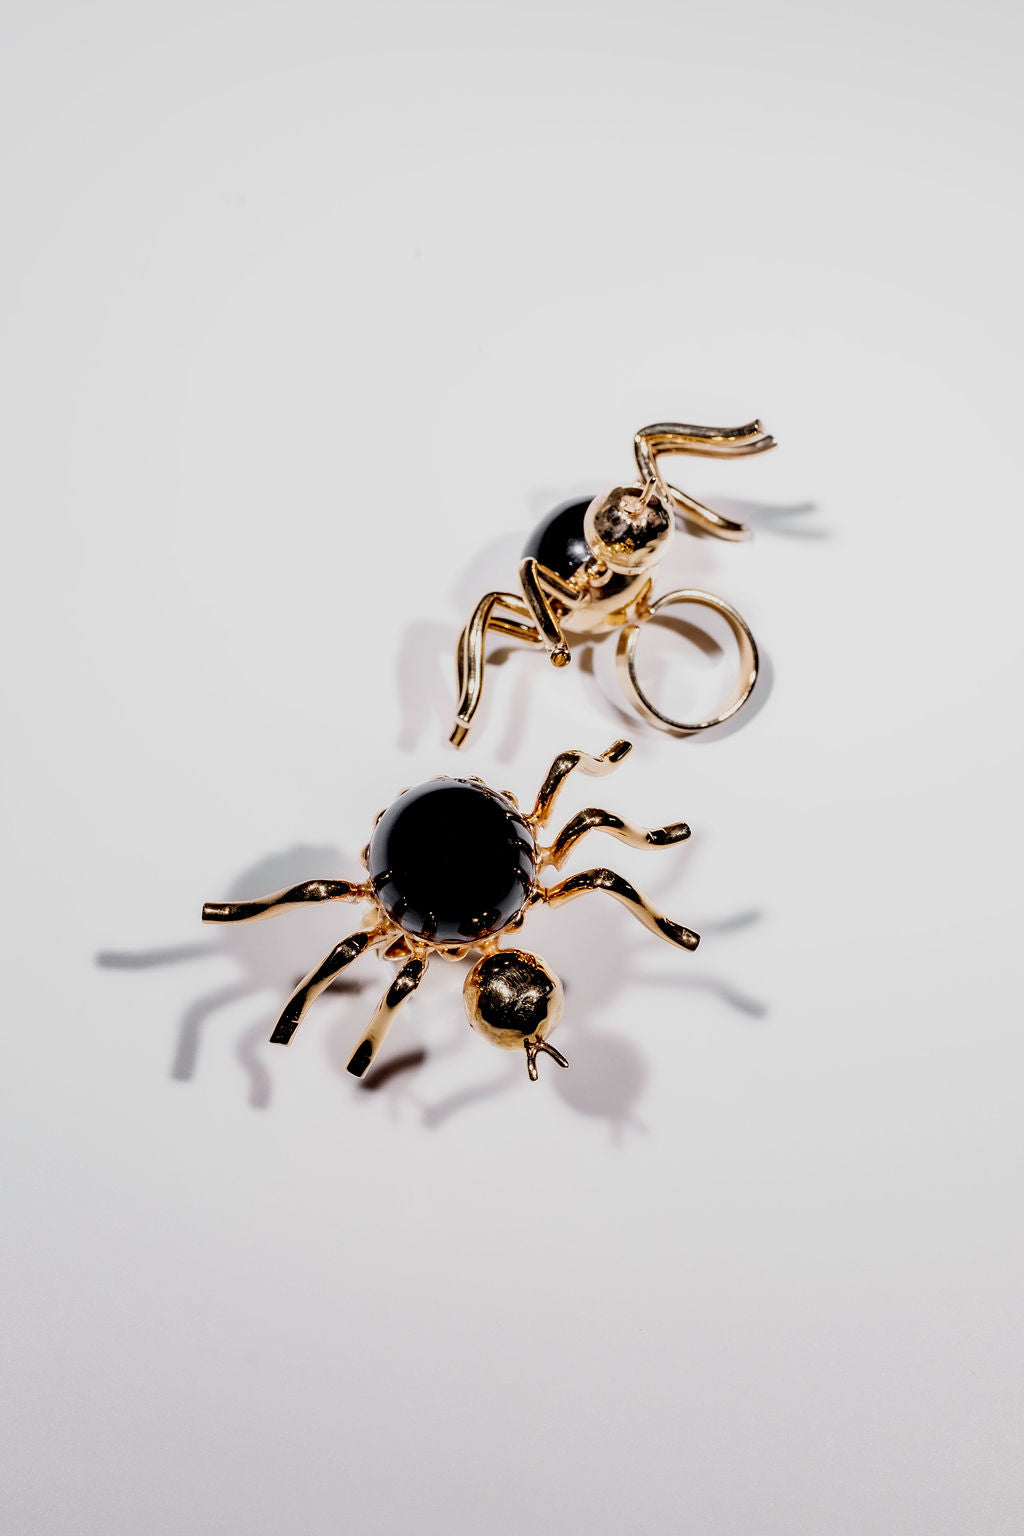 Spider Ring - Shantall Lacayo